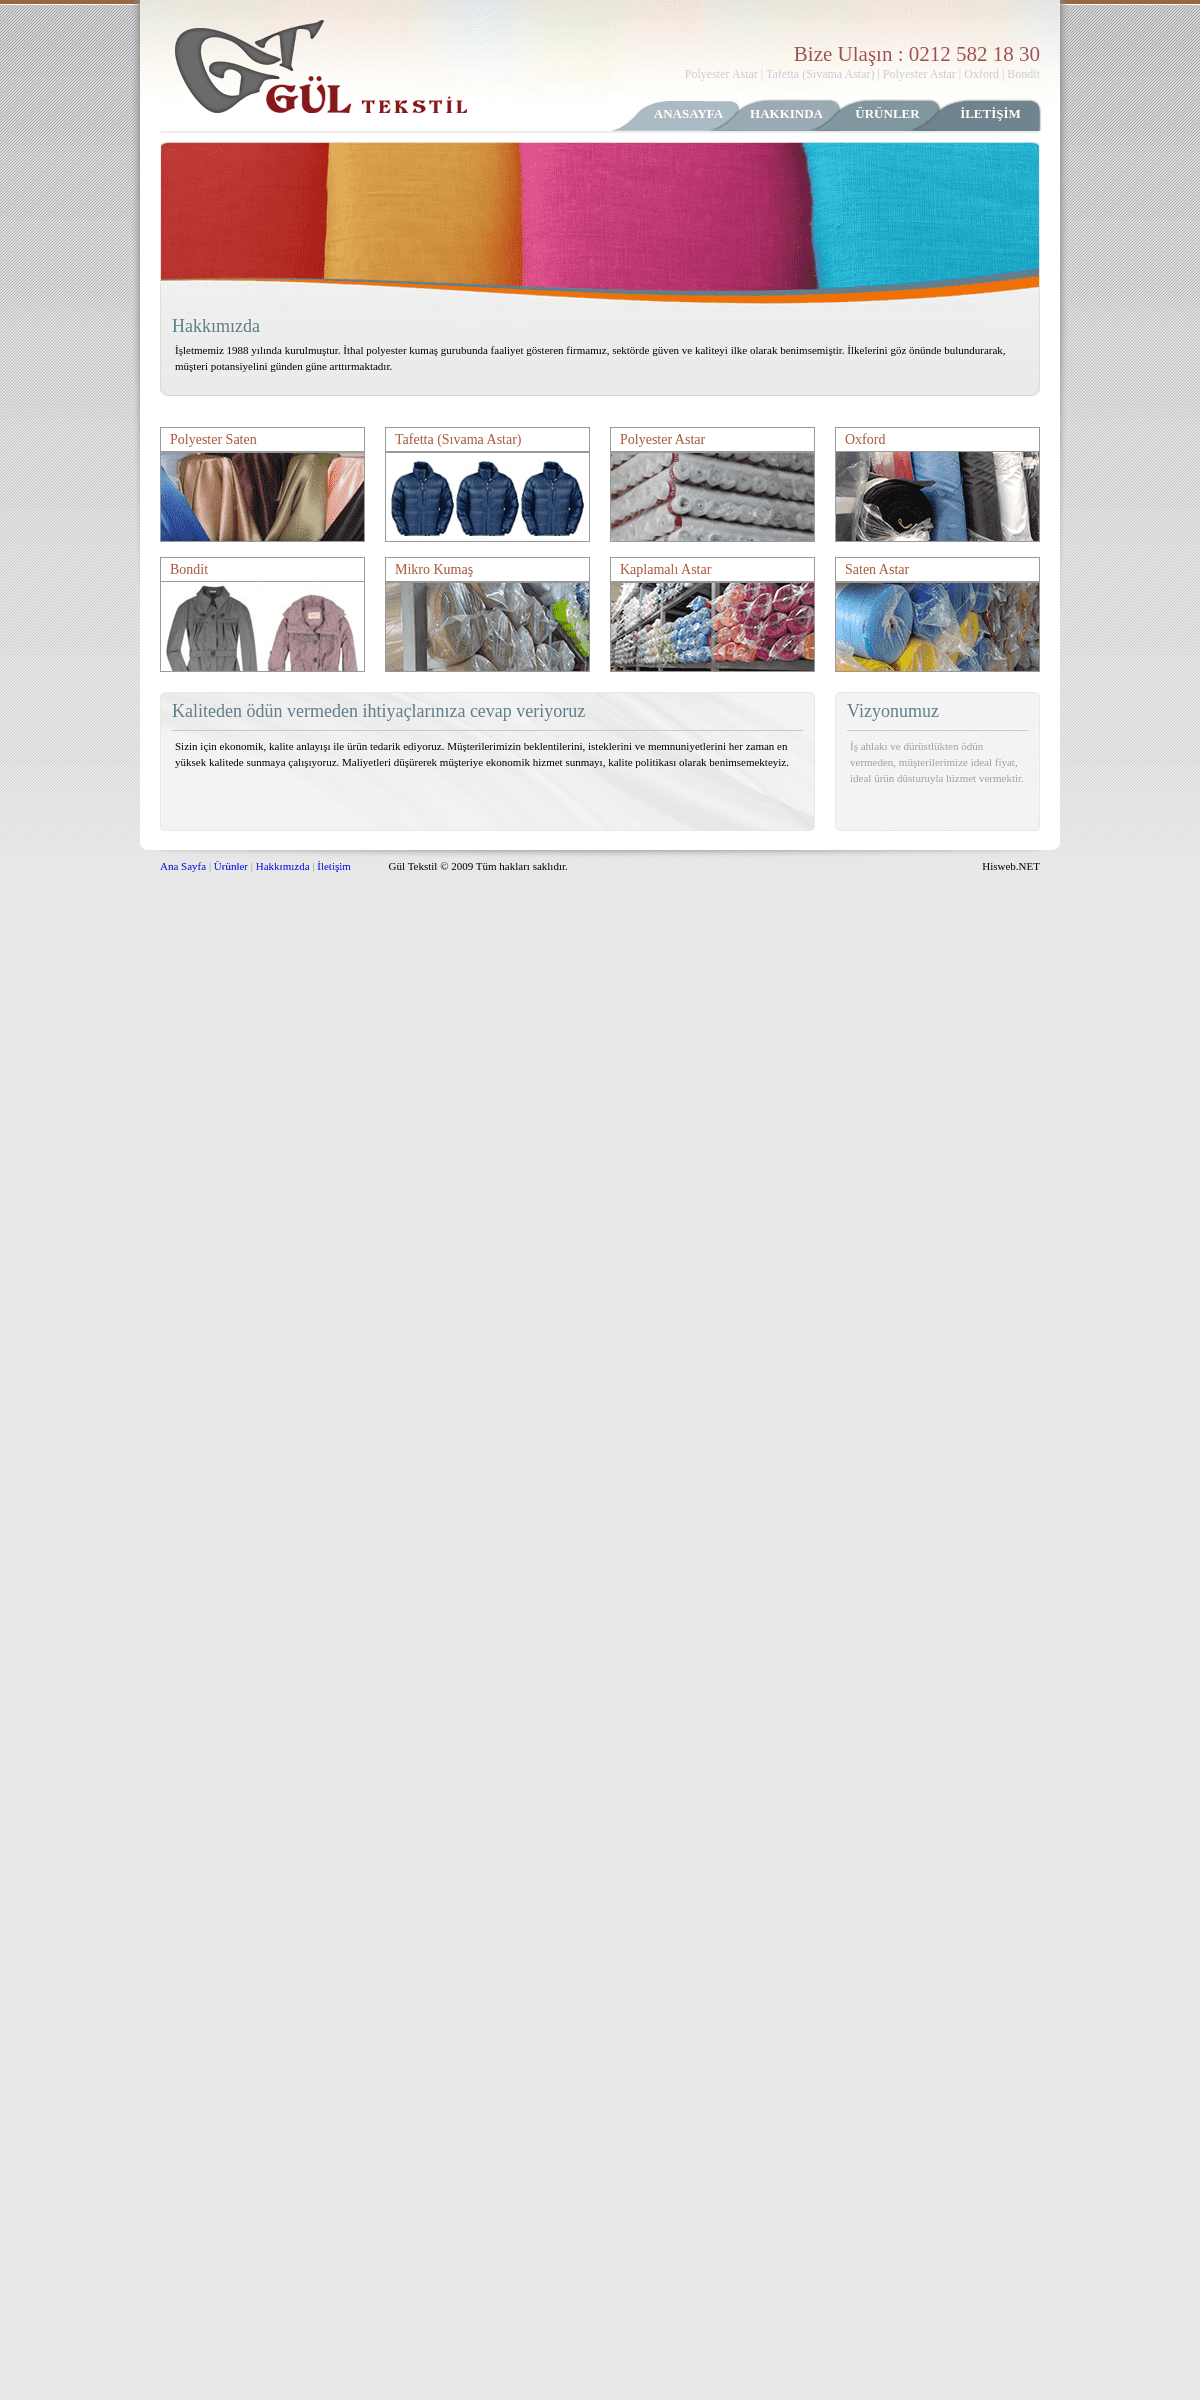 A complete backup of gul-tekstil.com